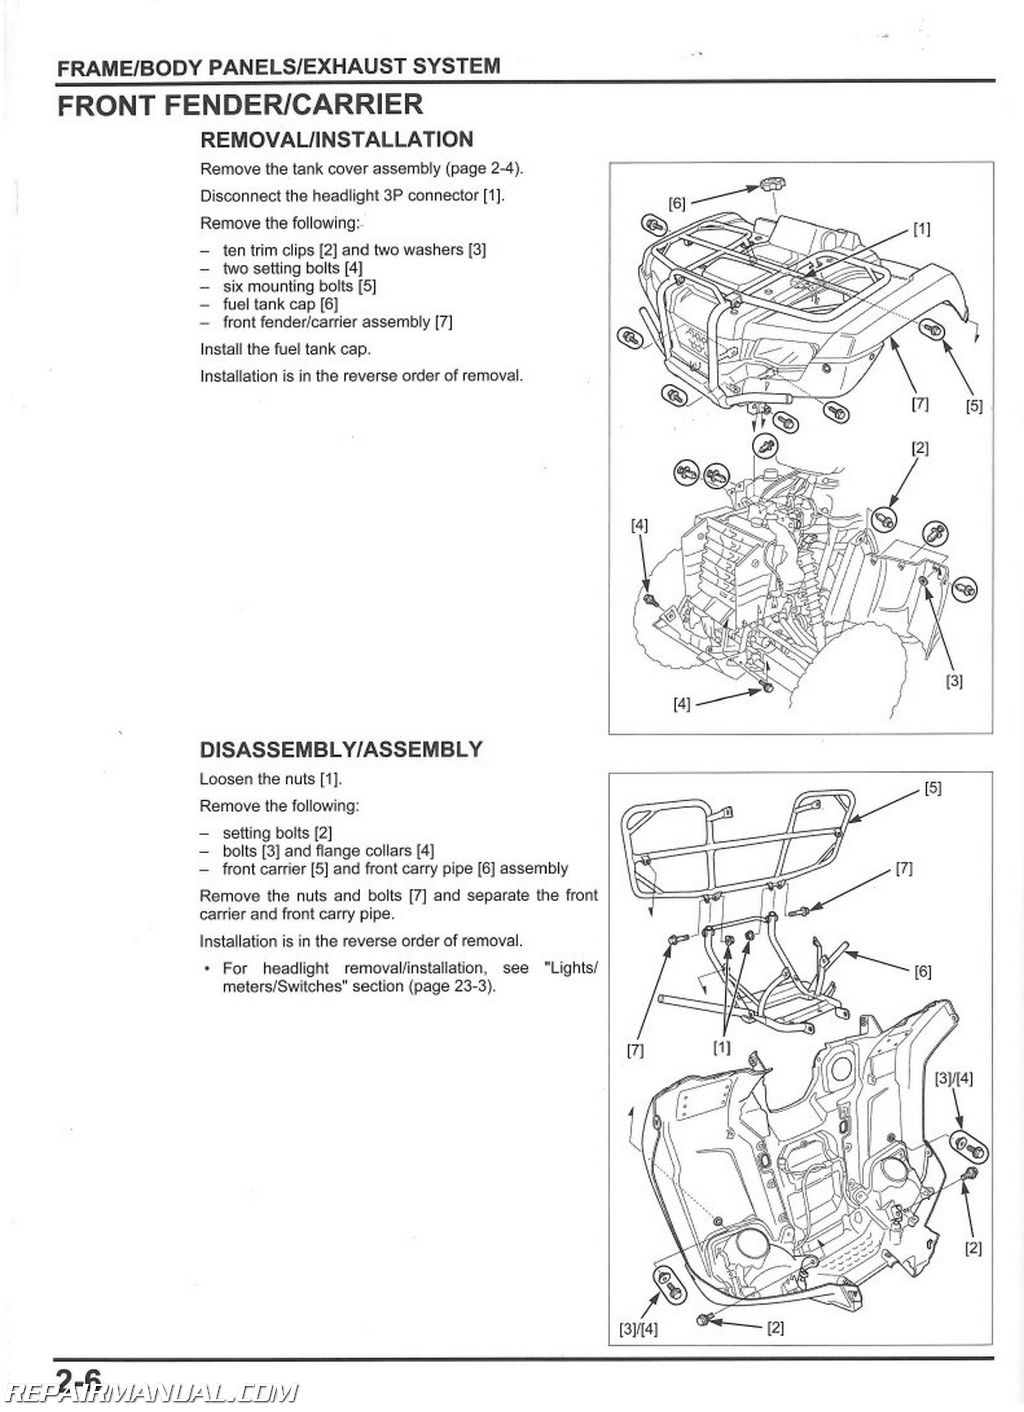 2017 Honda Rancher 420 Repair Manual - foldergenerous